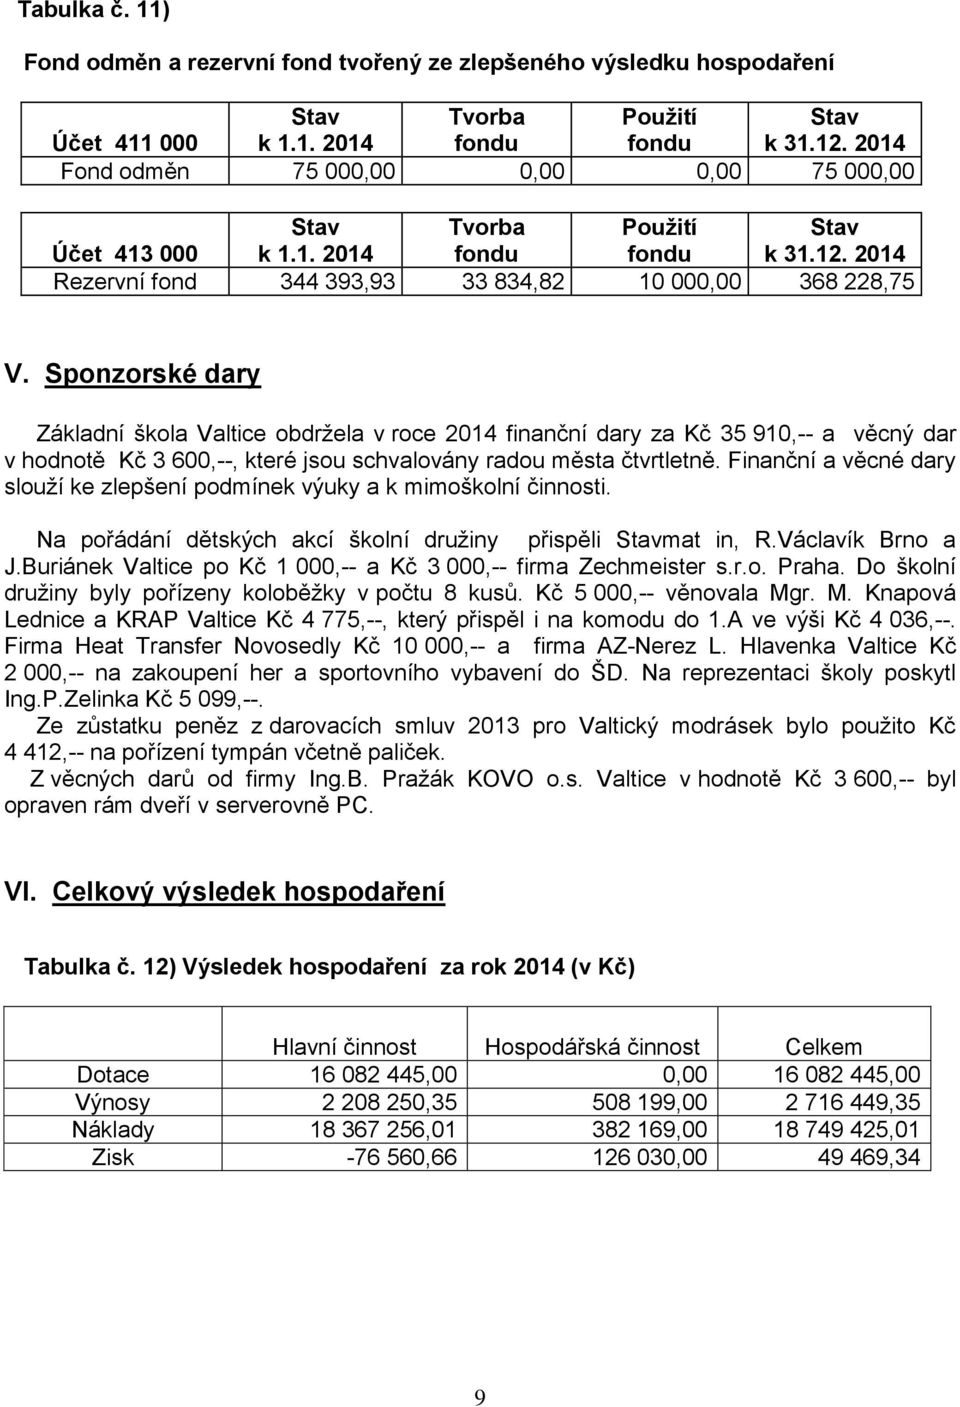 Sponzorské dary Základní škola Valtice obdržela v roce 2014 finanční dary za Kč 35 910,-- a věcný dar v hodnotě Kč 3 600,--, které jsou schvalovány radou města čtvrtletně.